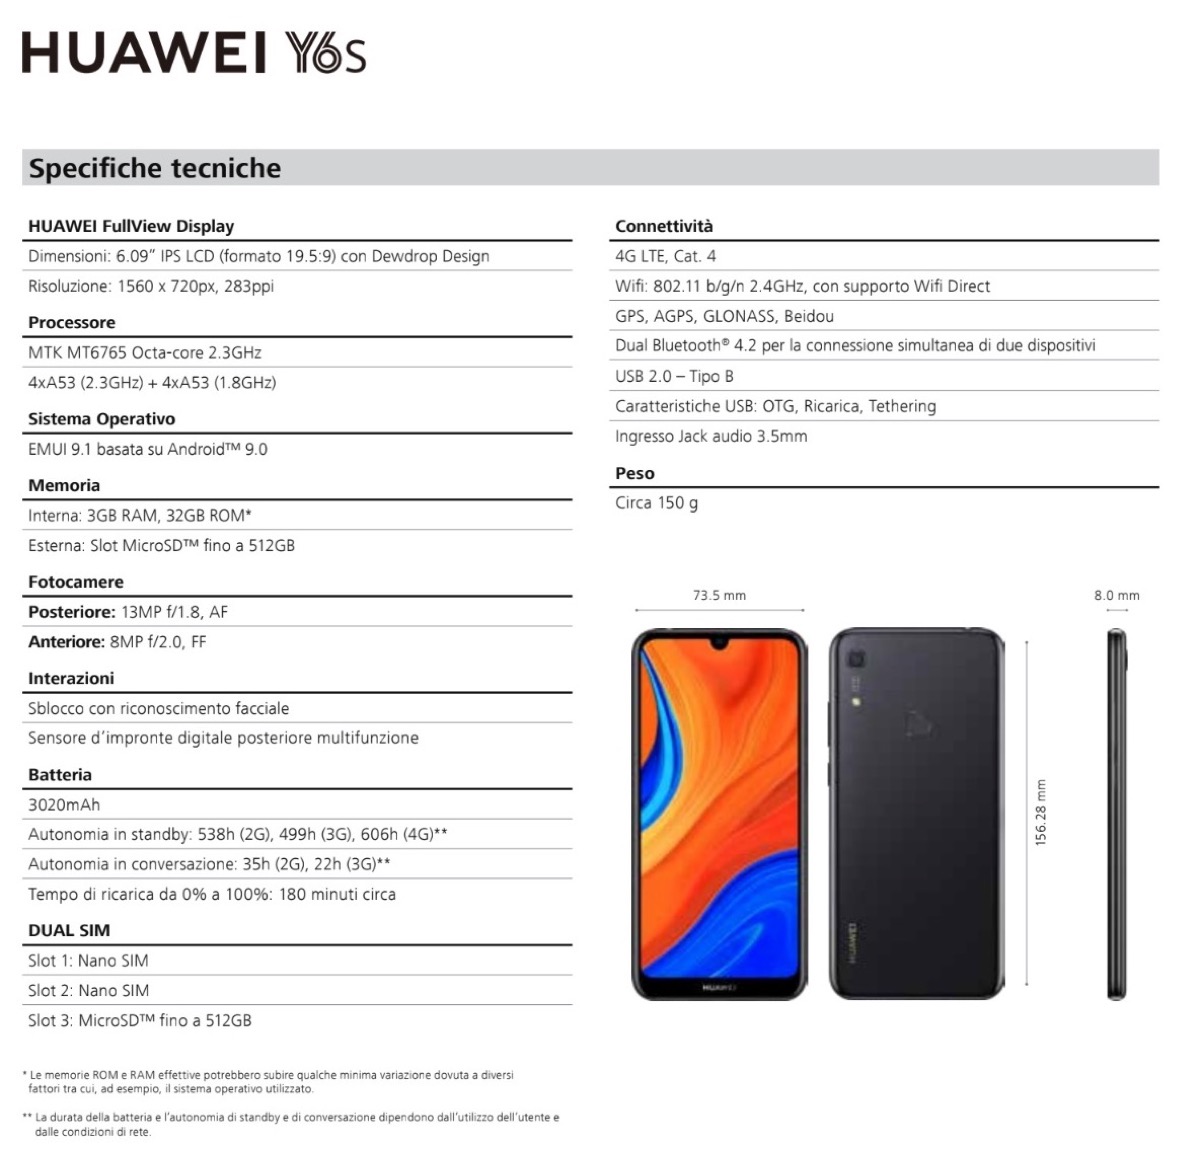 Nuovo smartphone Huawei Y6s, la sfida è nel prezzo